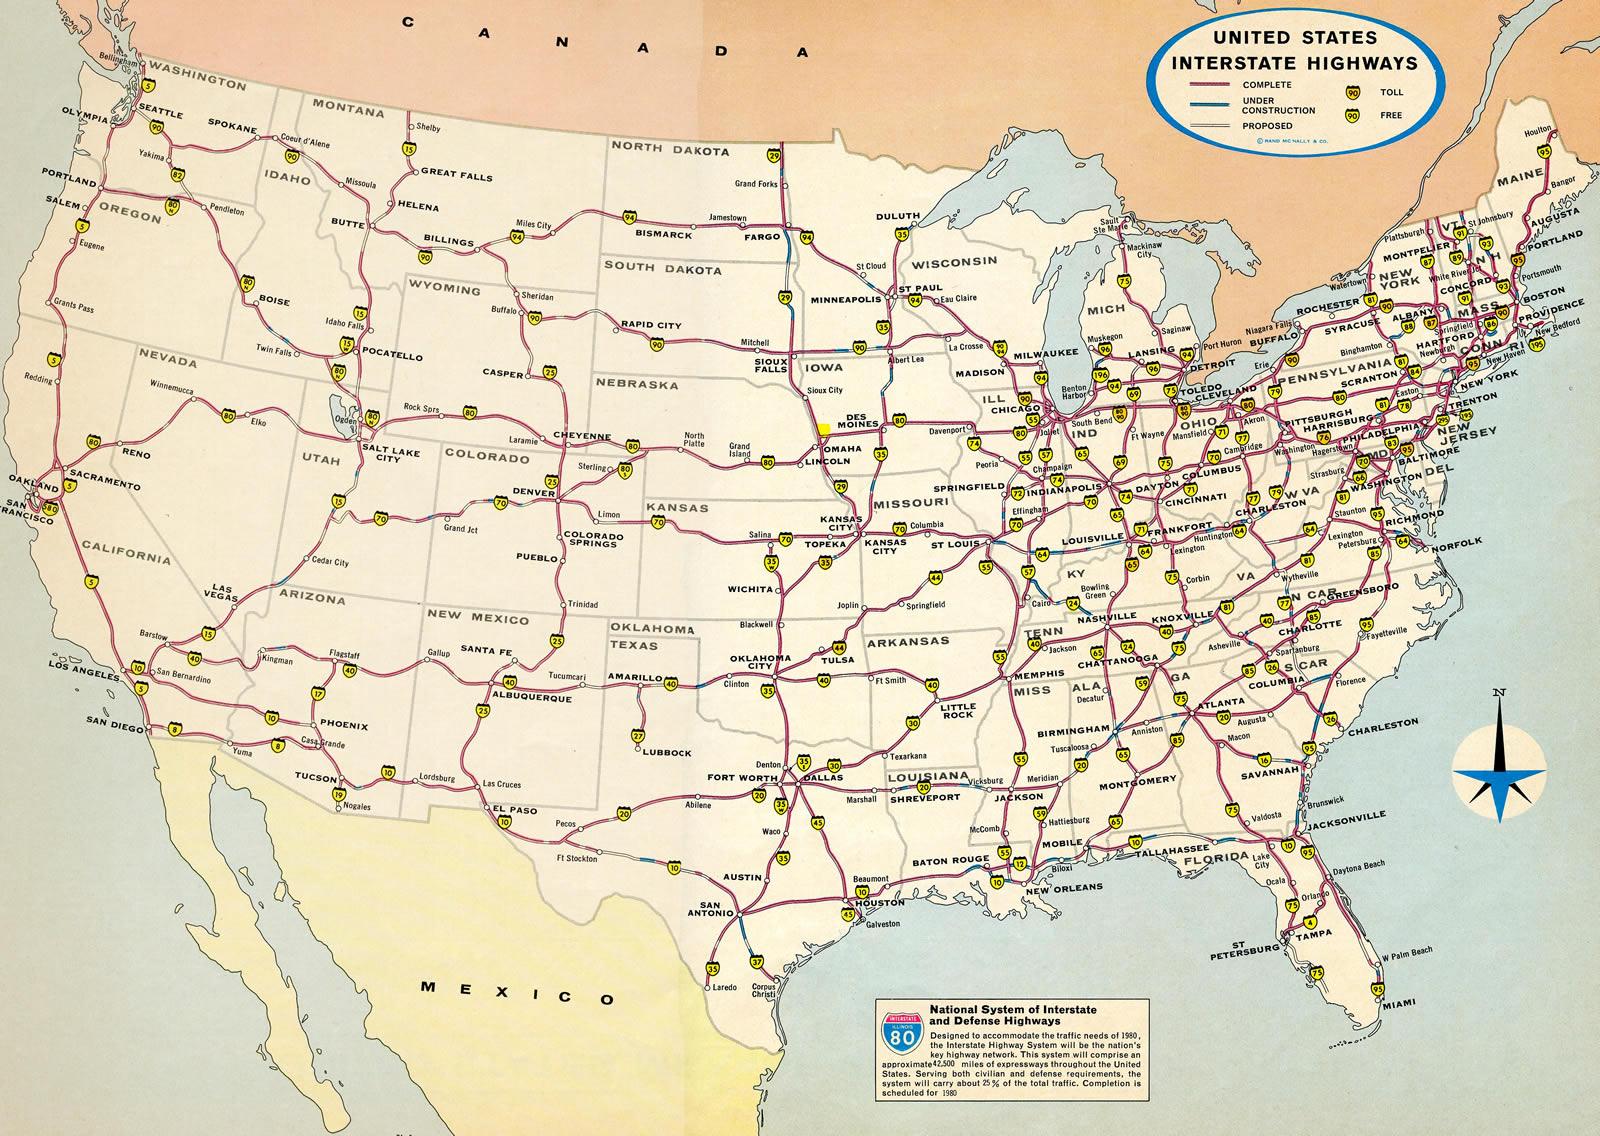 yhdysvallan kartta Kartta YHDYSVALTAIN moottoritiet ja YHDYSVALTOJEN kartta valtatiet  yhdysvallan kartta